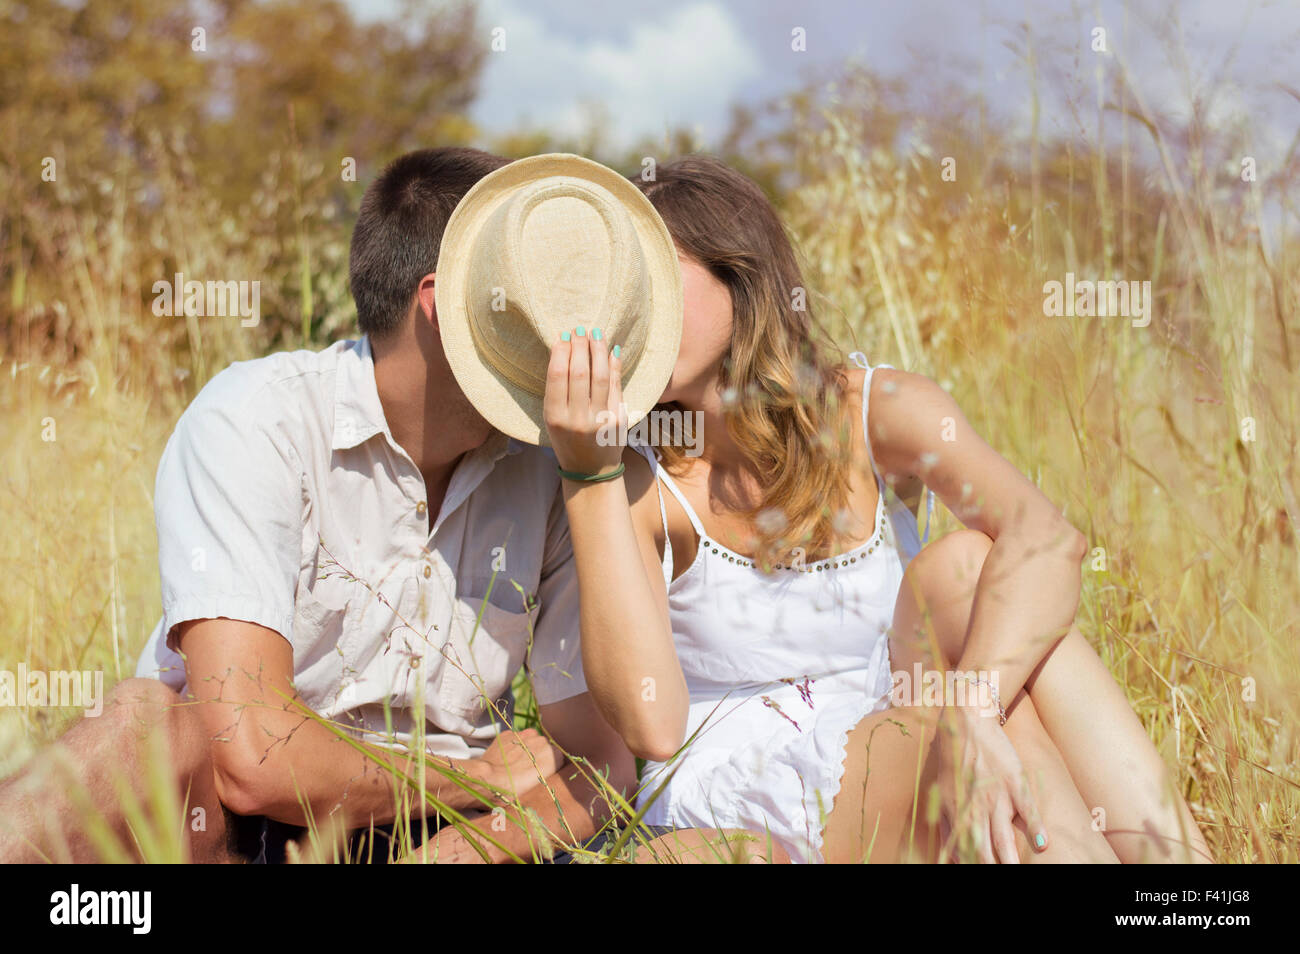 Paar küssen im Feld hinter einem Strohhut Stockfoto